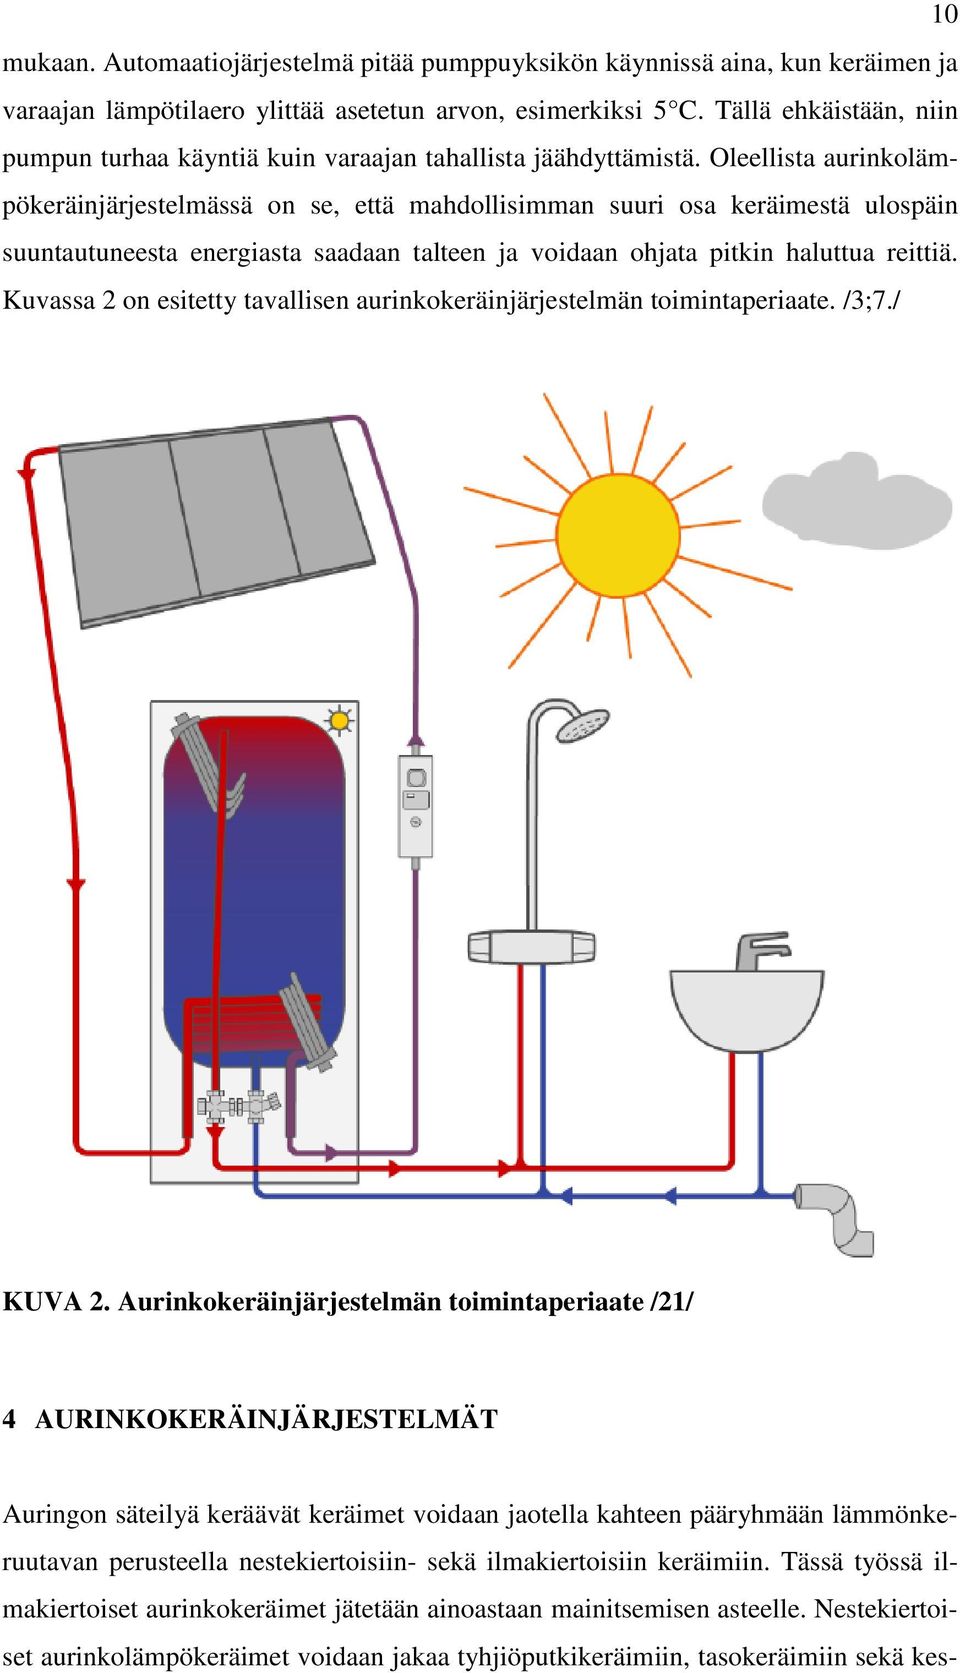 Oleellista aurinkolämpökeräinjärjestelmässä on se, että mahdollisimman suuri osa keräimestä ulospäin suuntautuneesta energiasta saadaan talteen ja voidaan ohjata pitkin haluttua reittiä.